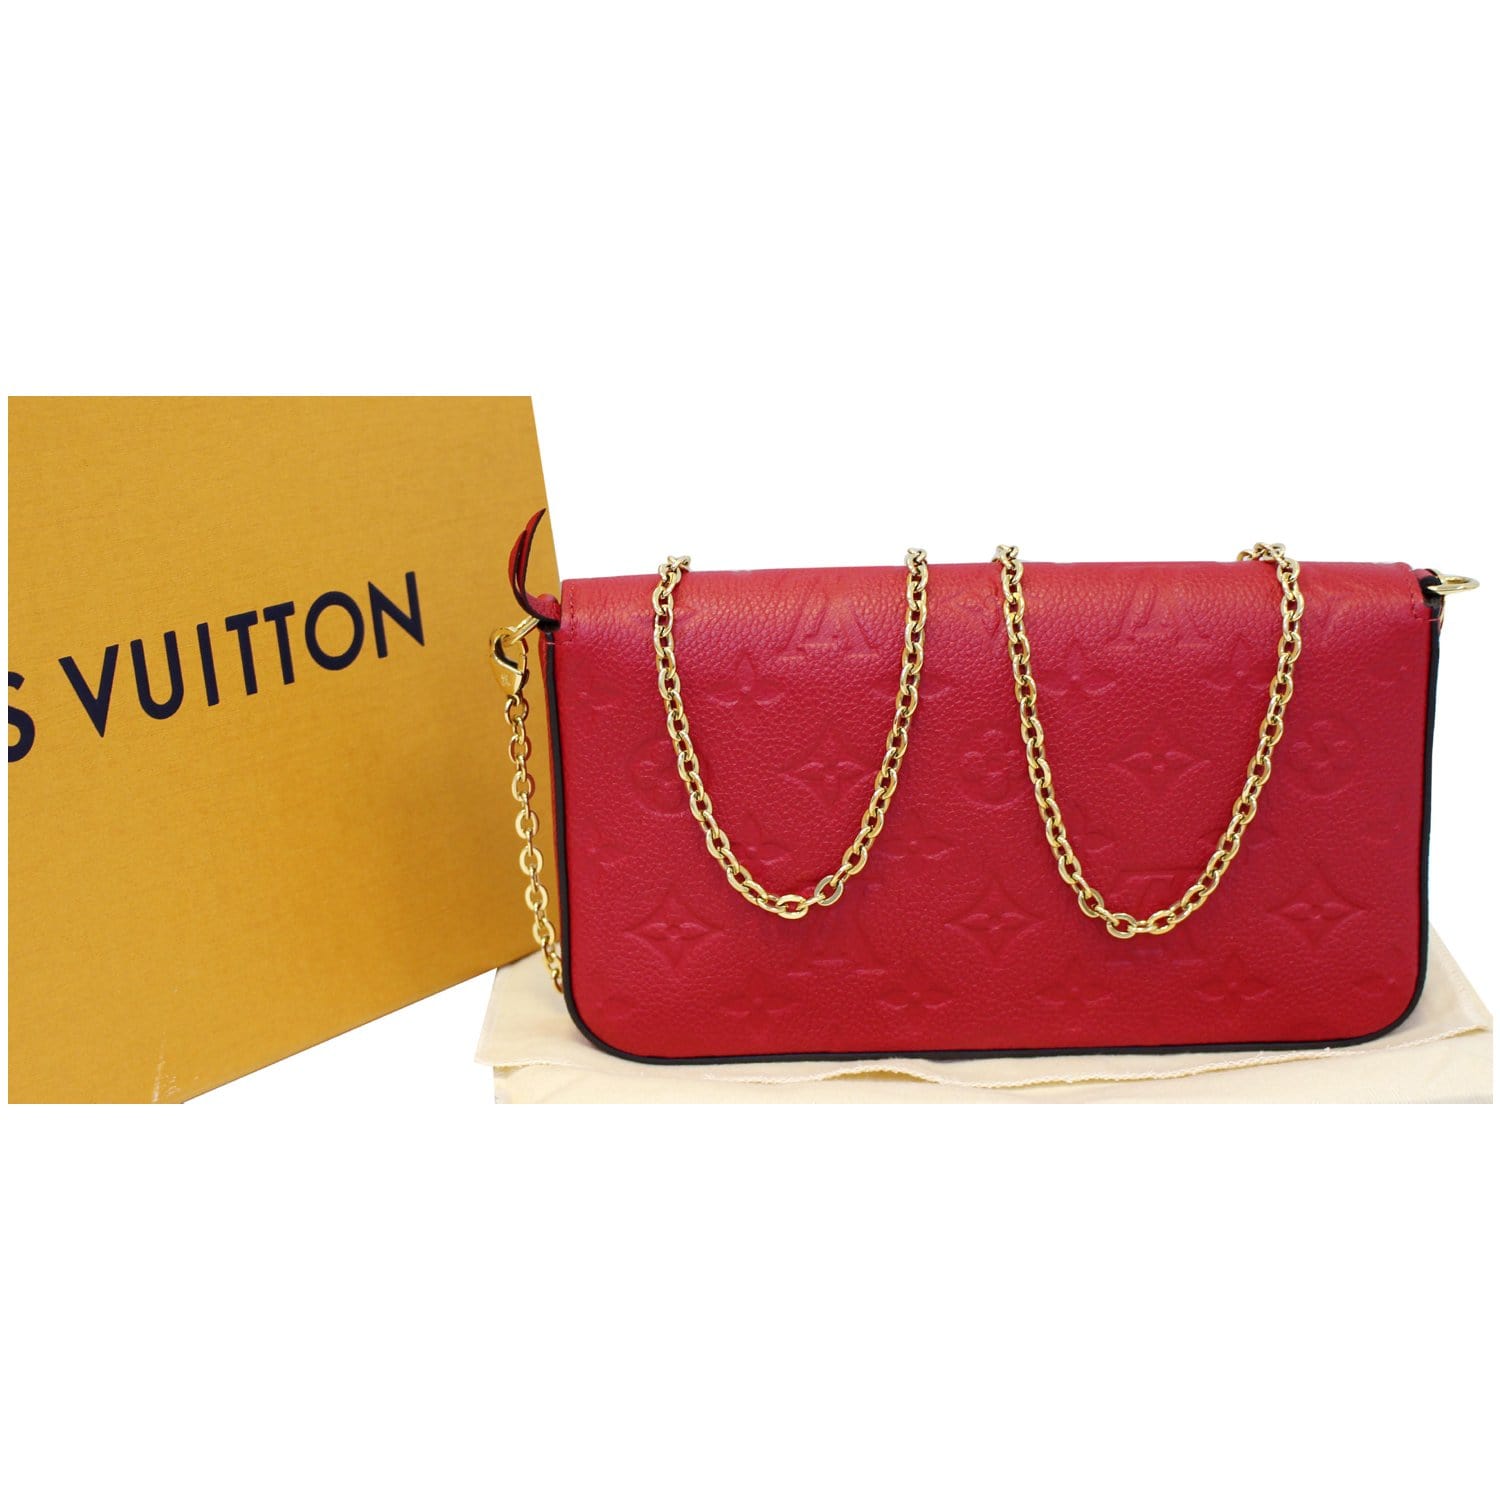 Louis Vuitton Felicie Pochette Monogram flap pouch for Sale in City